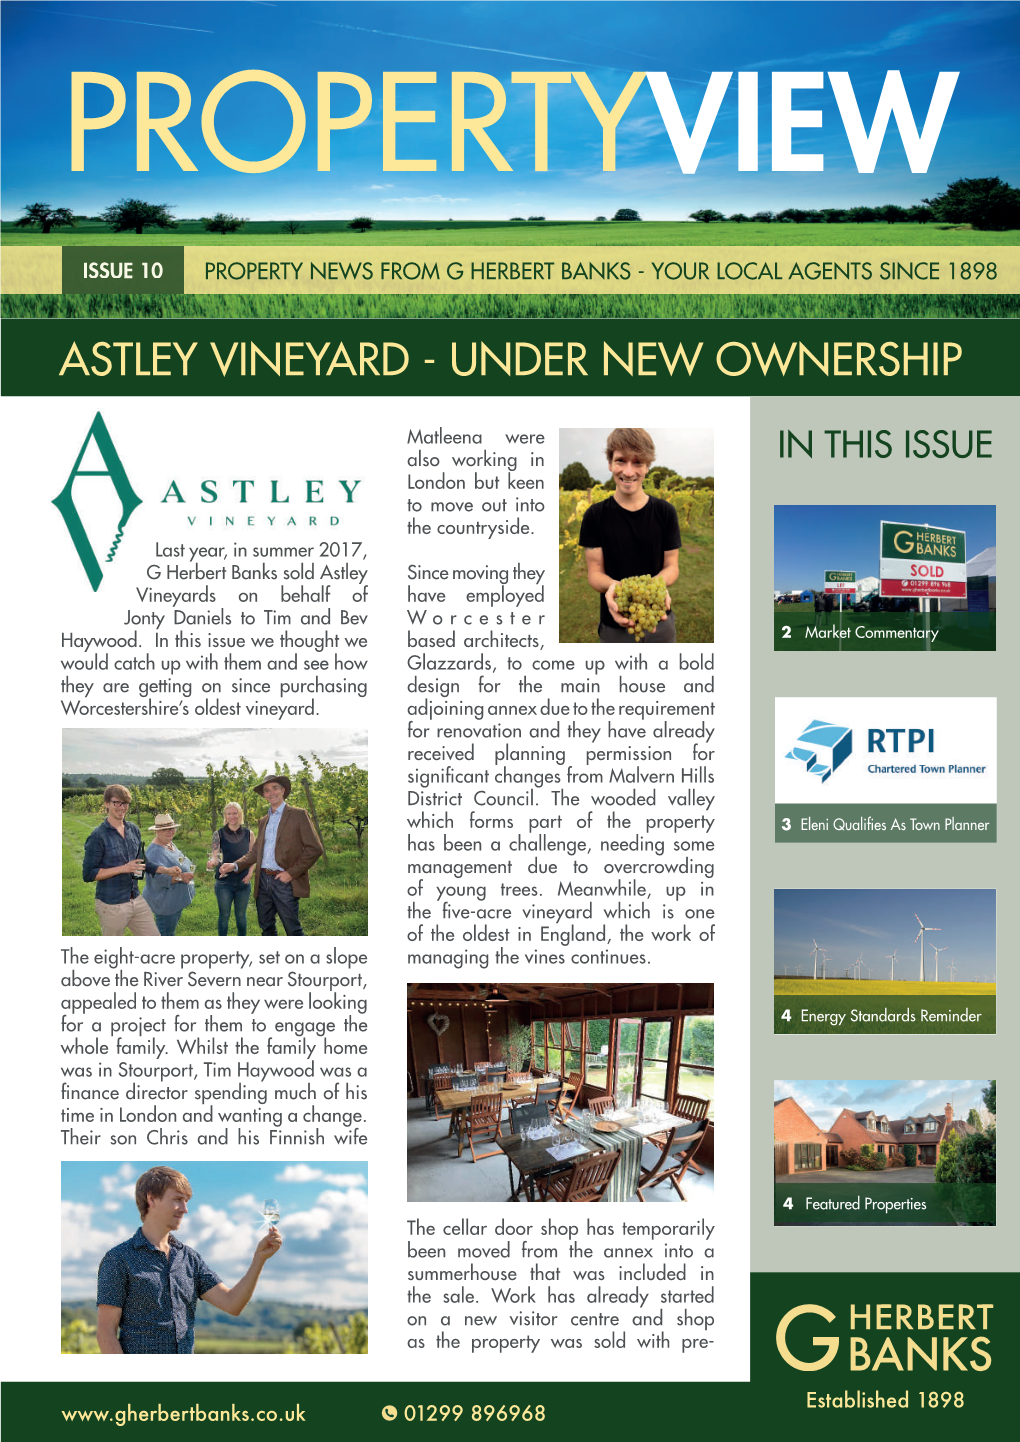 Astley Vineyard - Under New Ownership